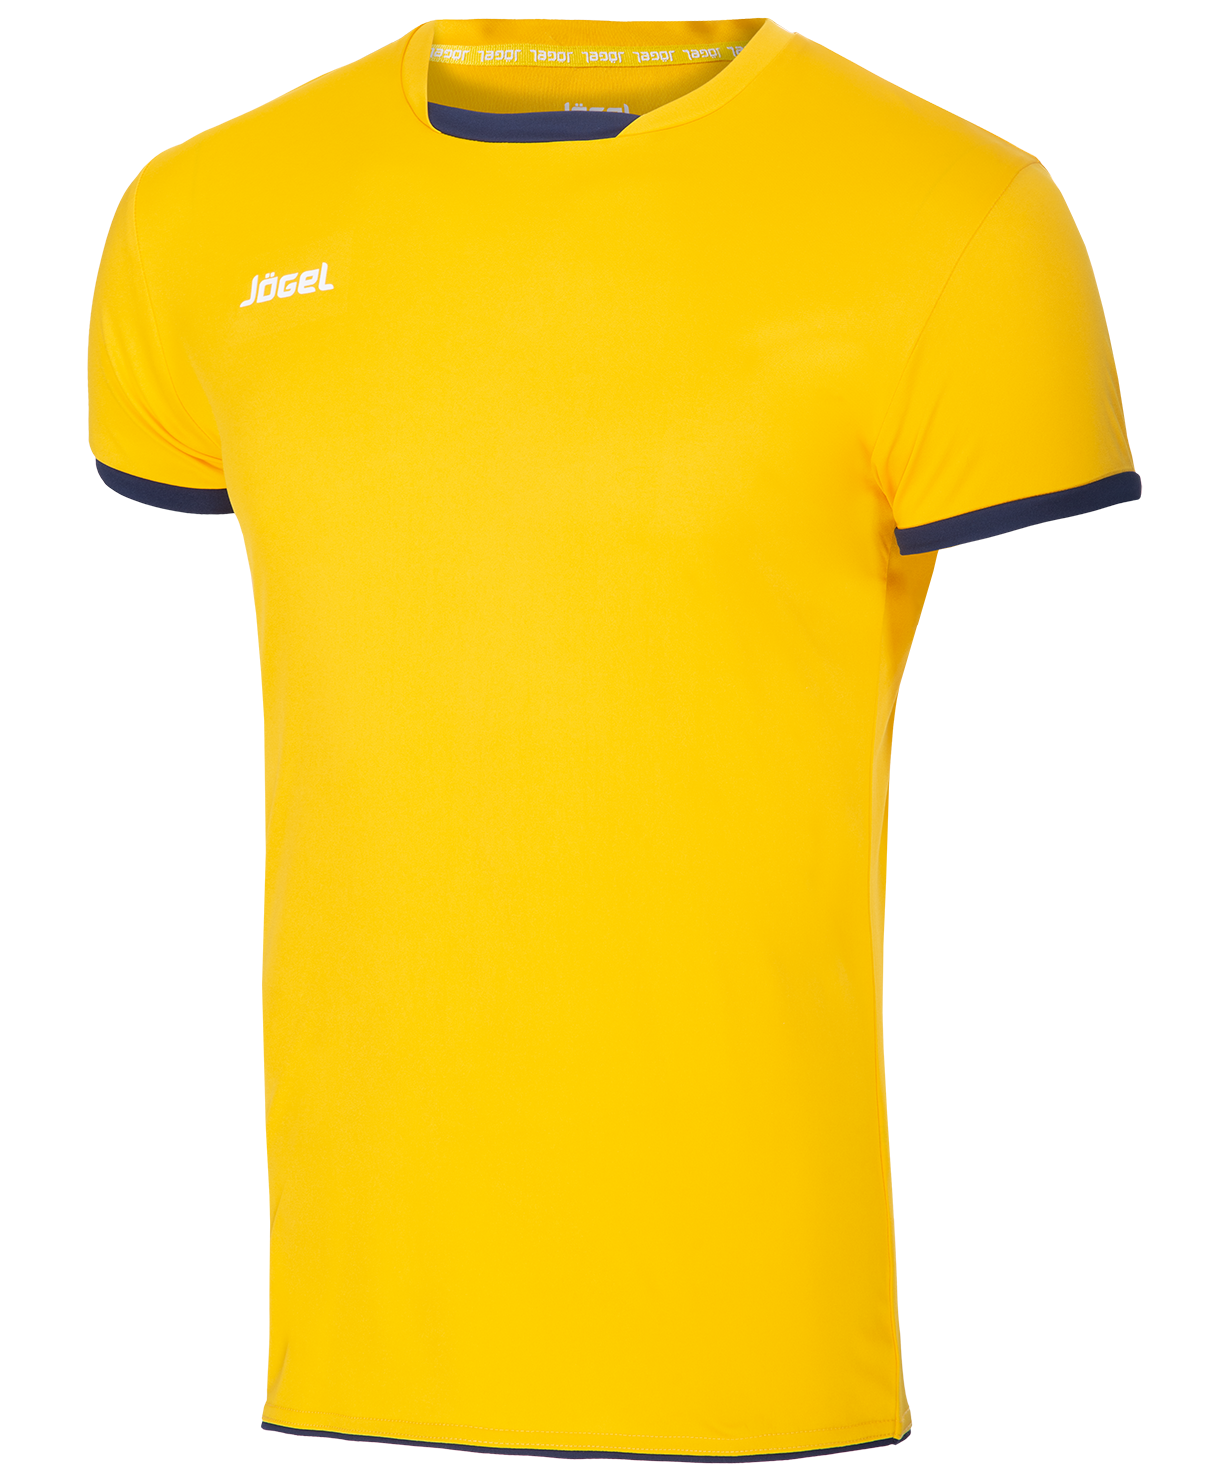 Jogel купить форму. Jogel футболка волейбольная. Майка волейбольная MS желтая. Футболка желтая. Желтая спортивная футболка.